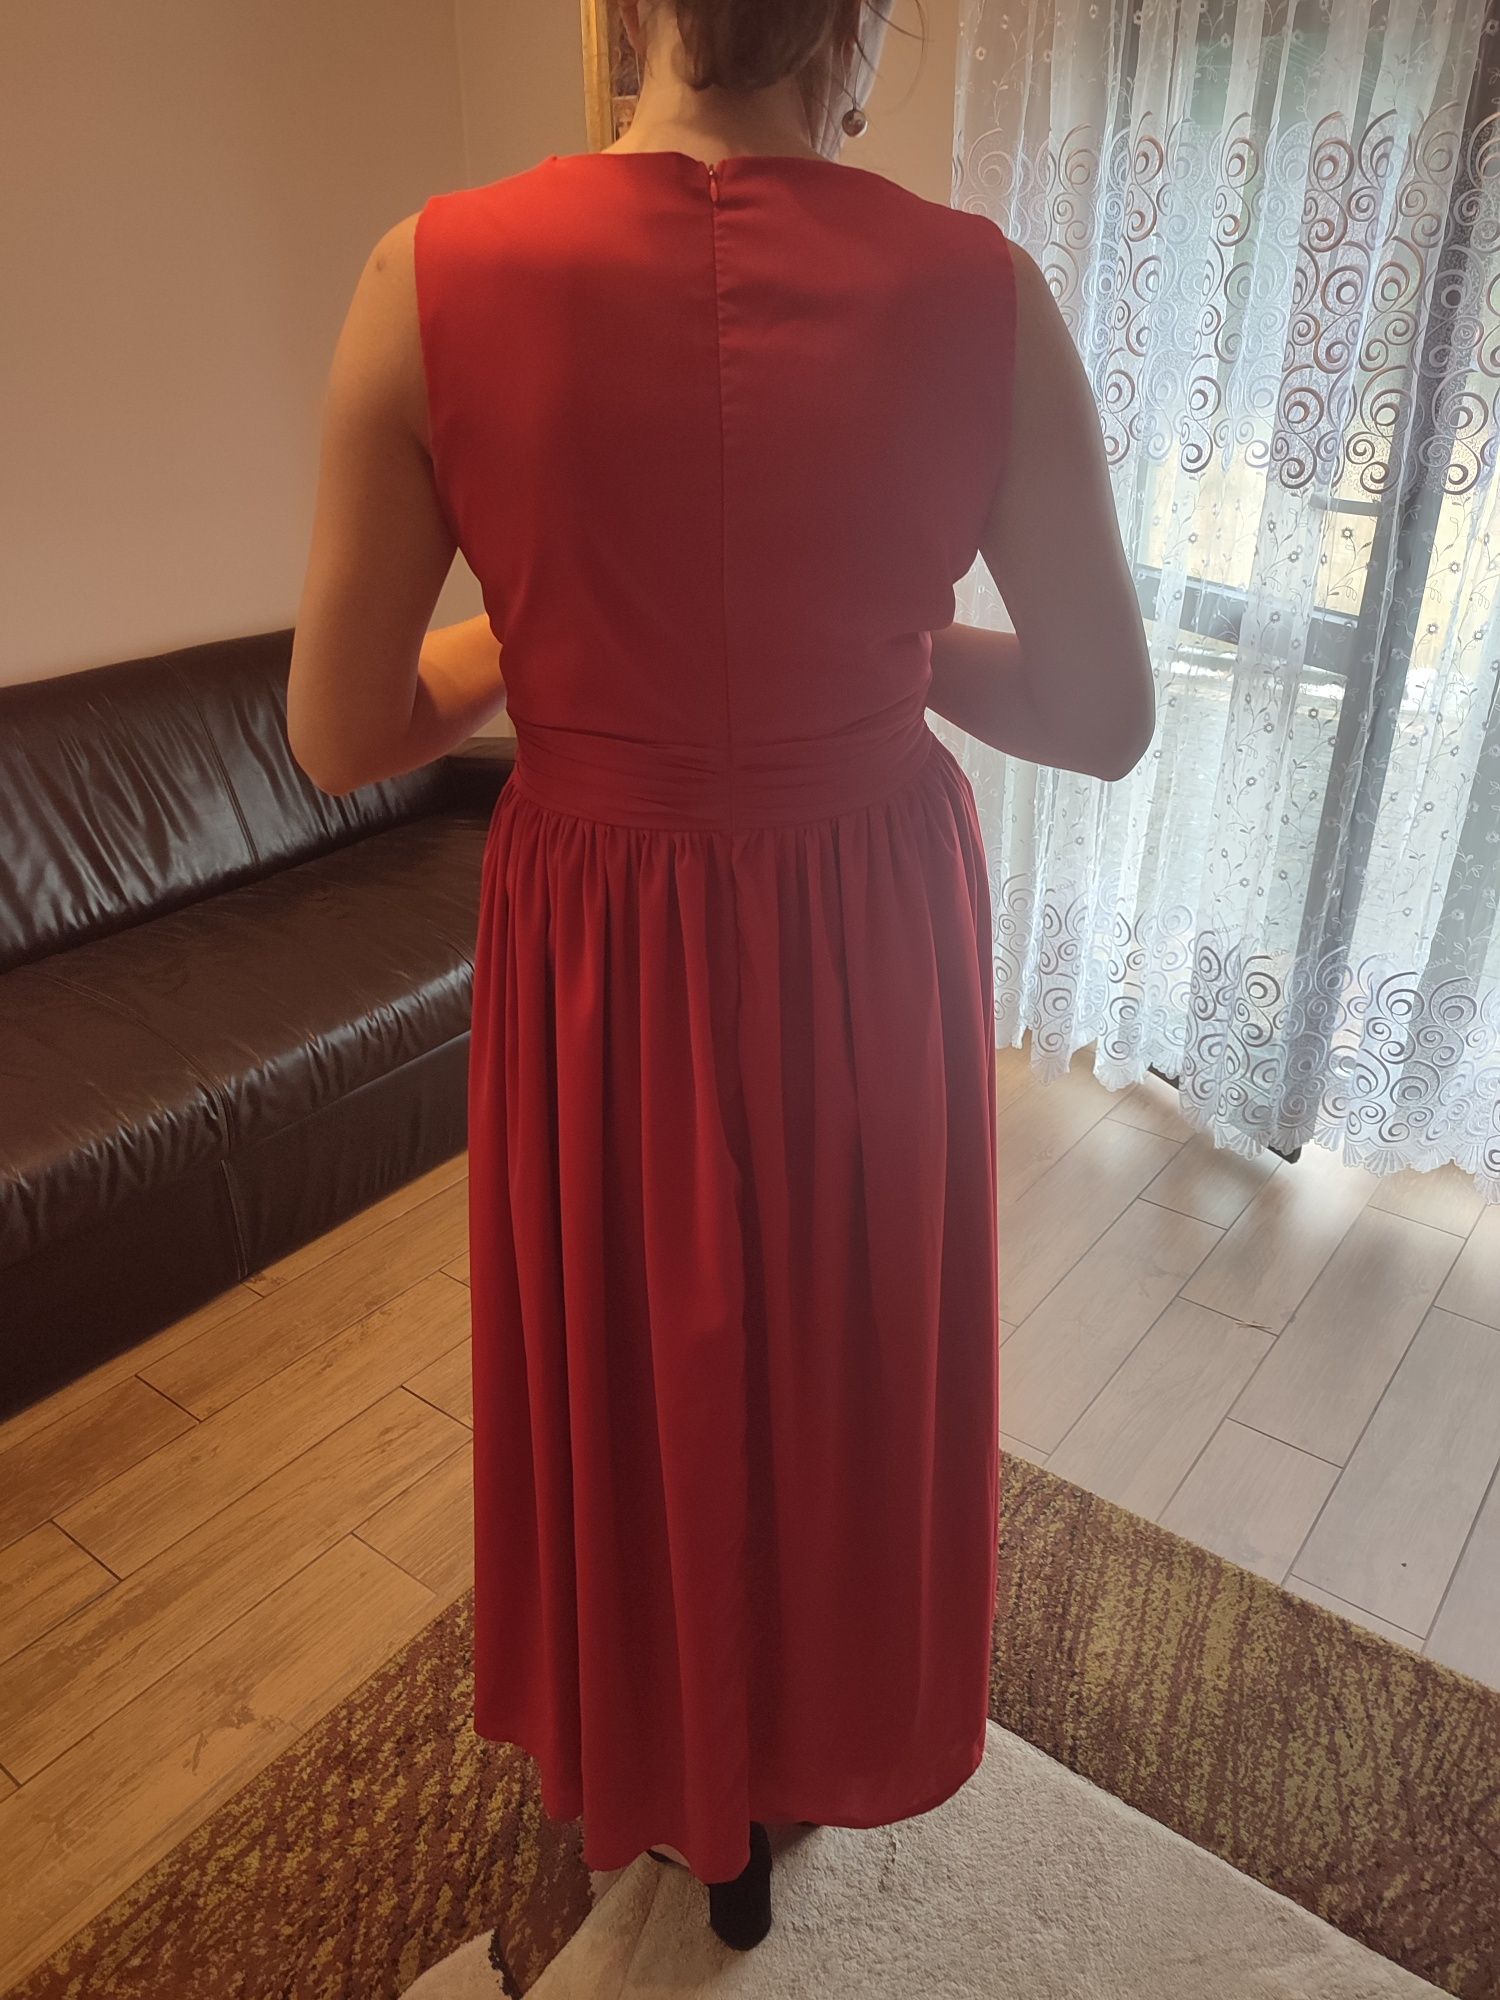 Sukienka, suknia czerwona